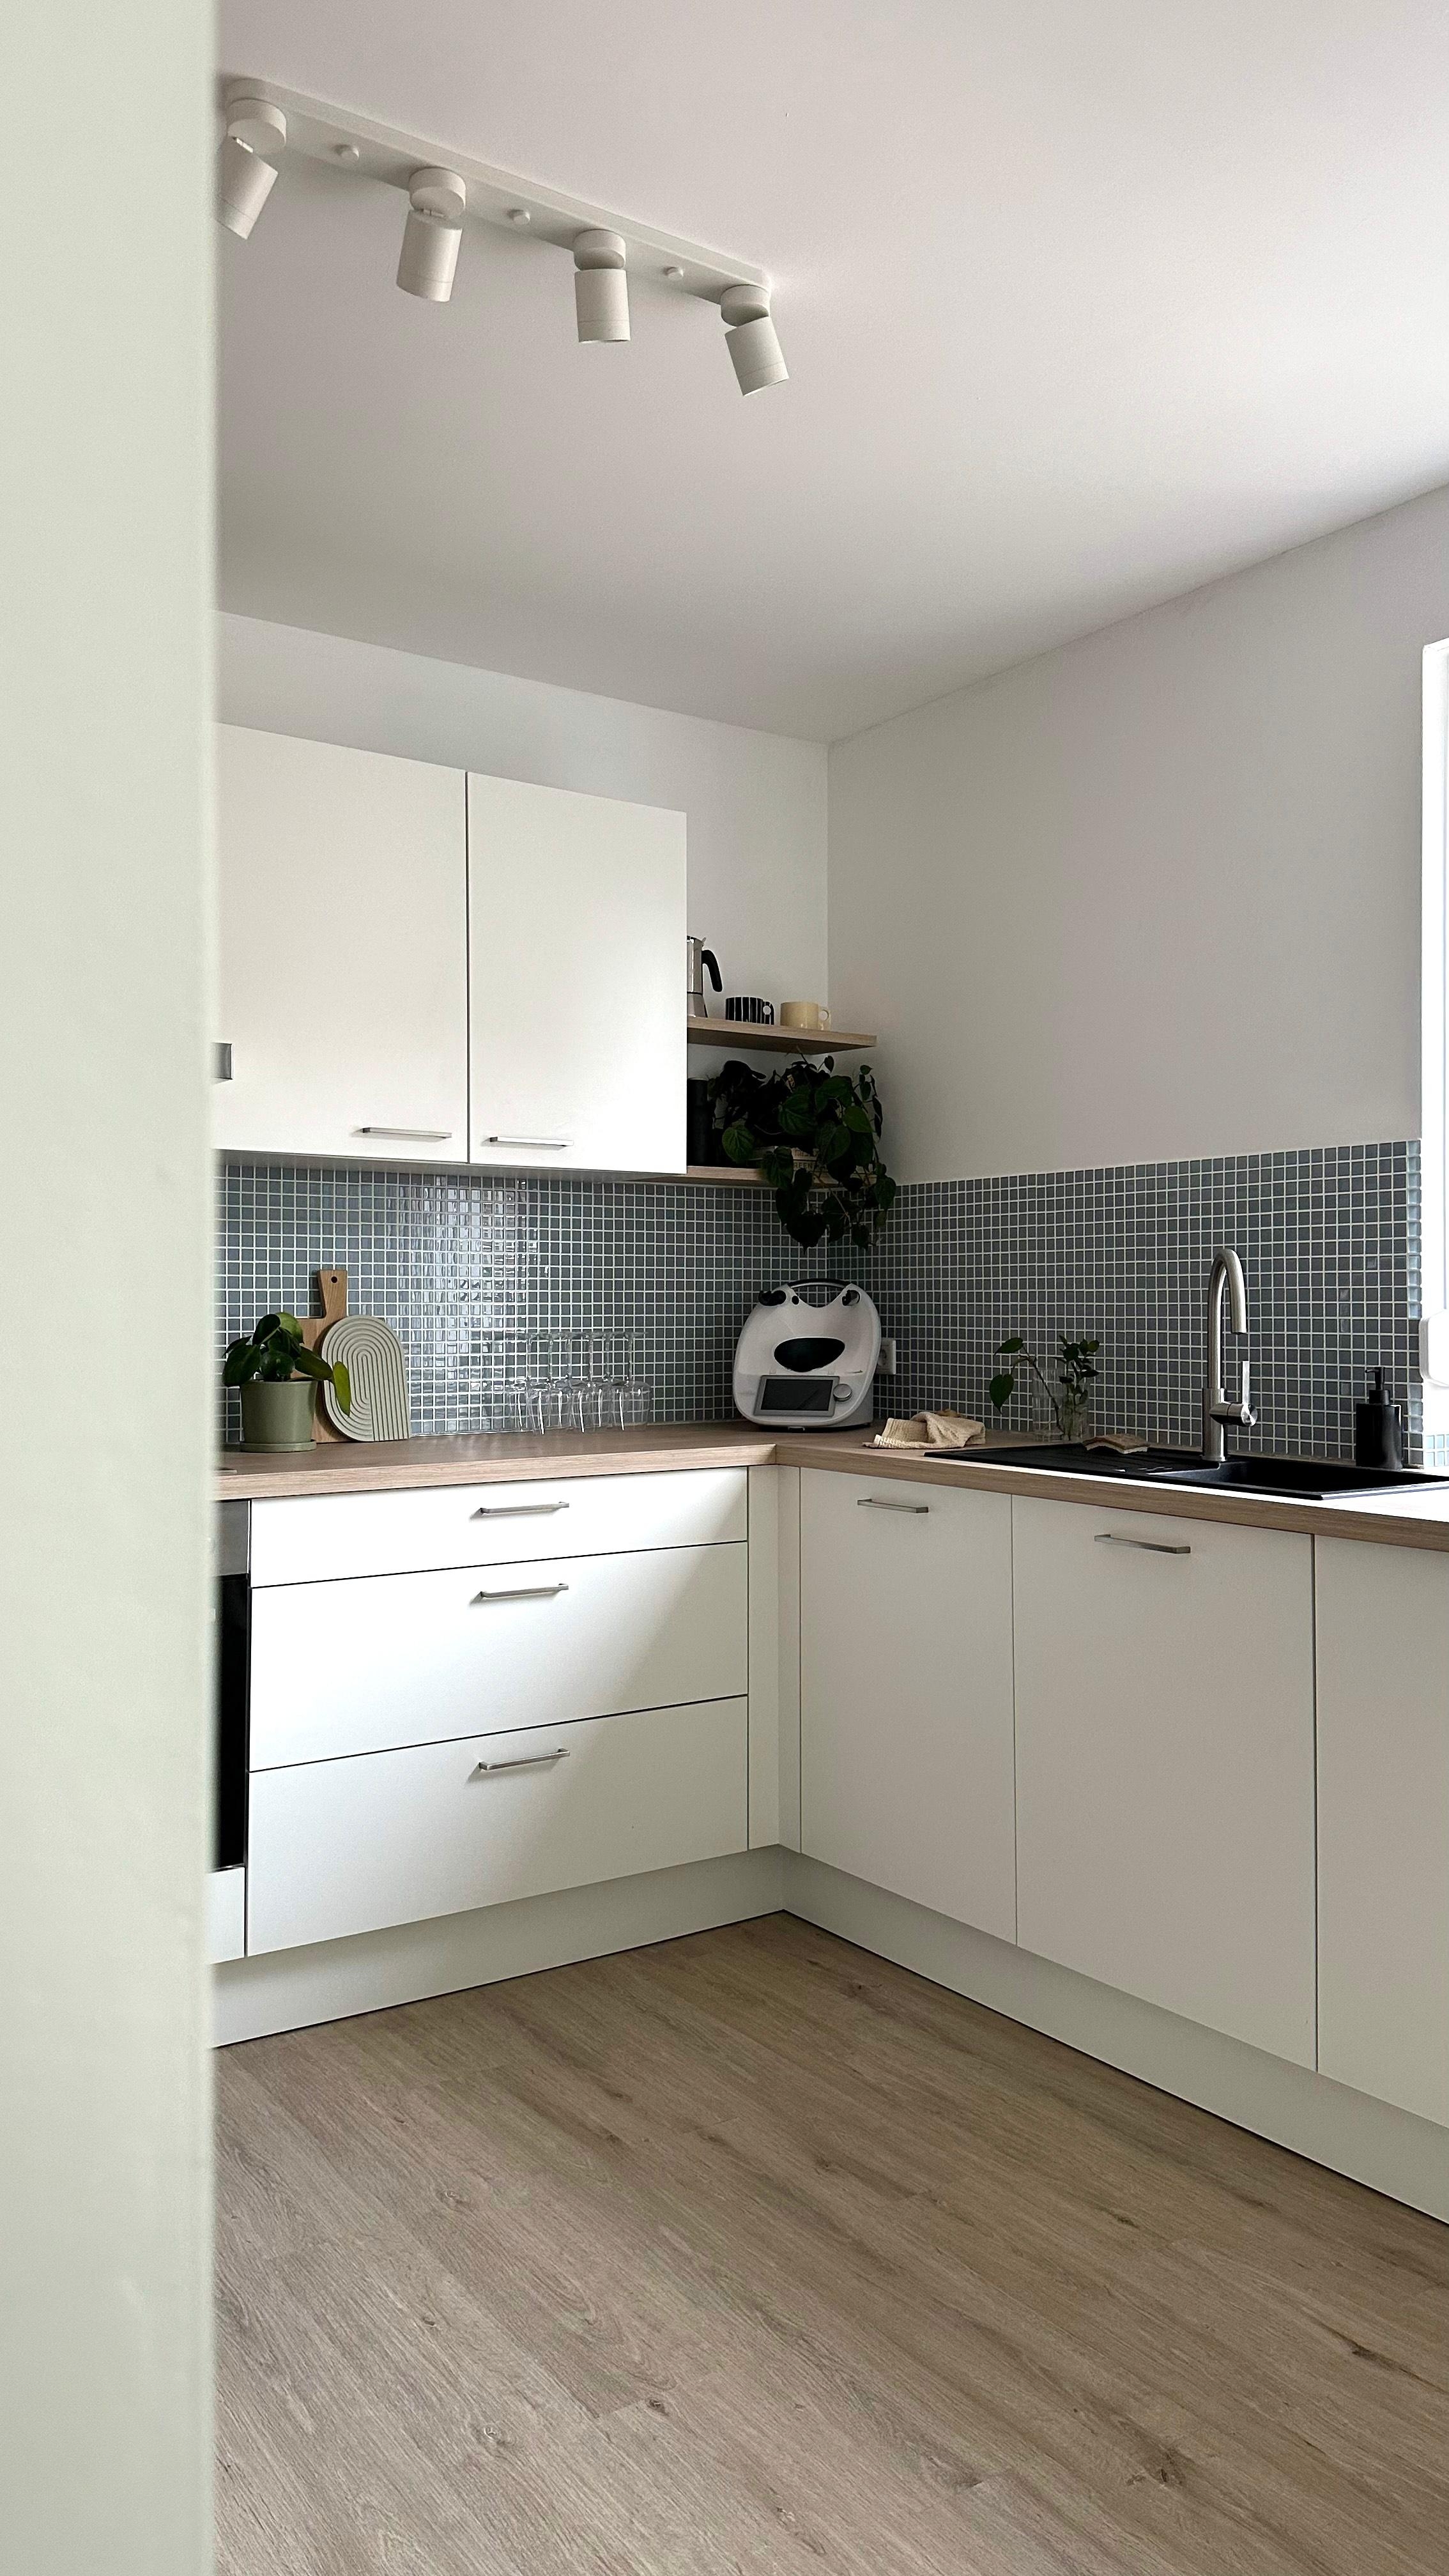 #küche #weißeküche #küchenliebe #couchliebt #fliesenspiegel #mosaikfliesen #offeneküche